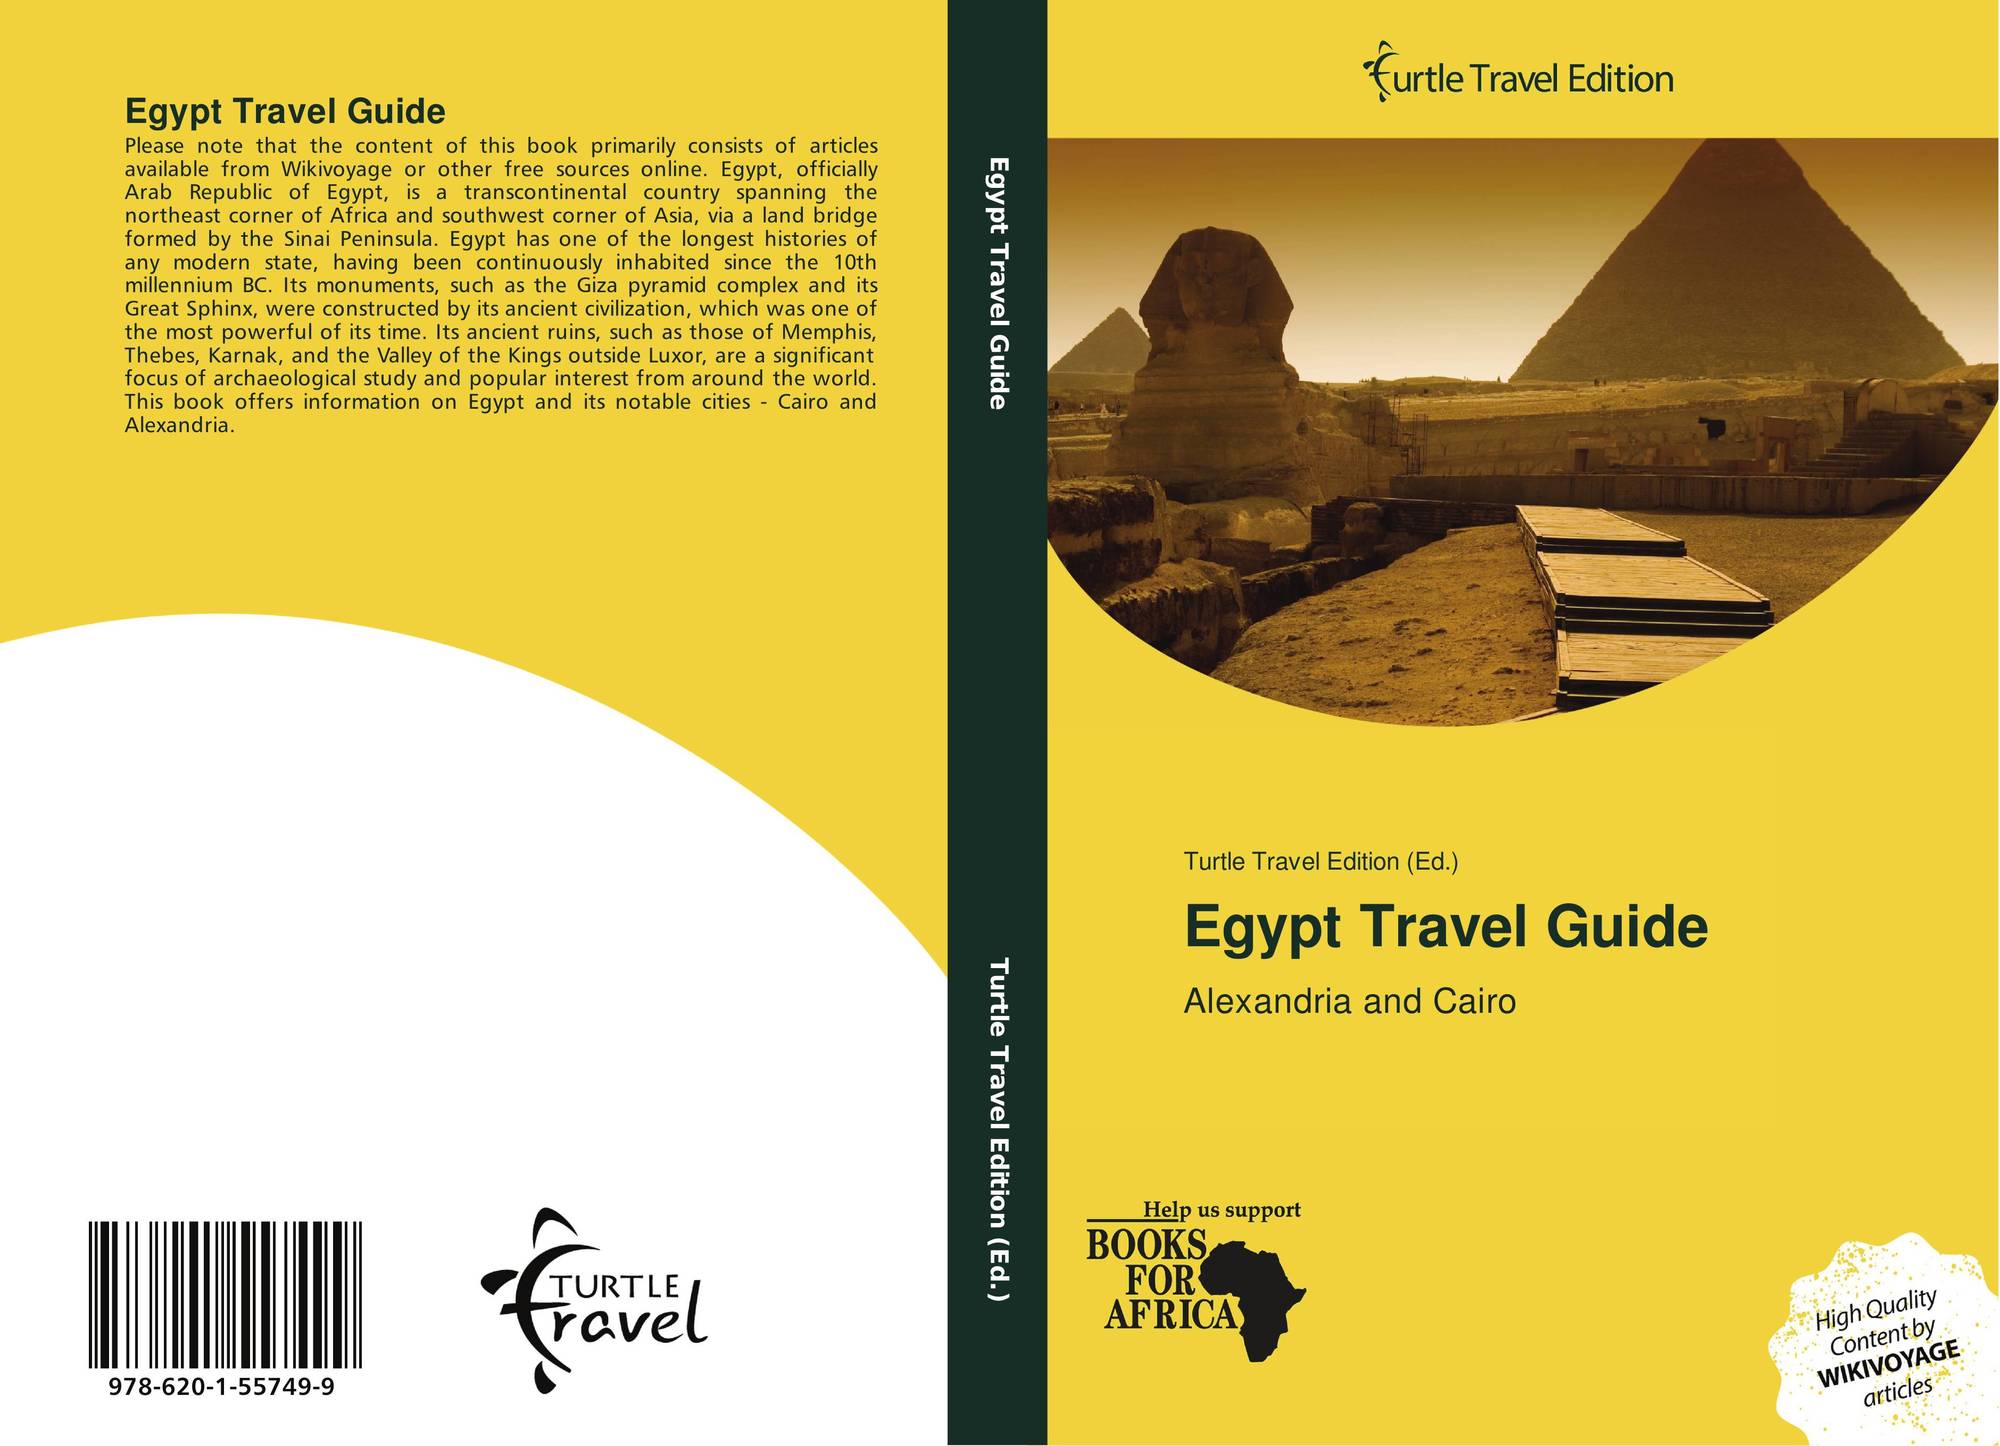 egypt travel guide reading test